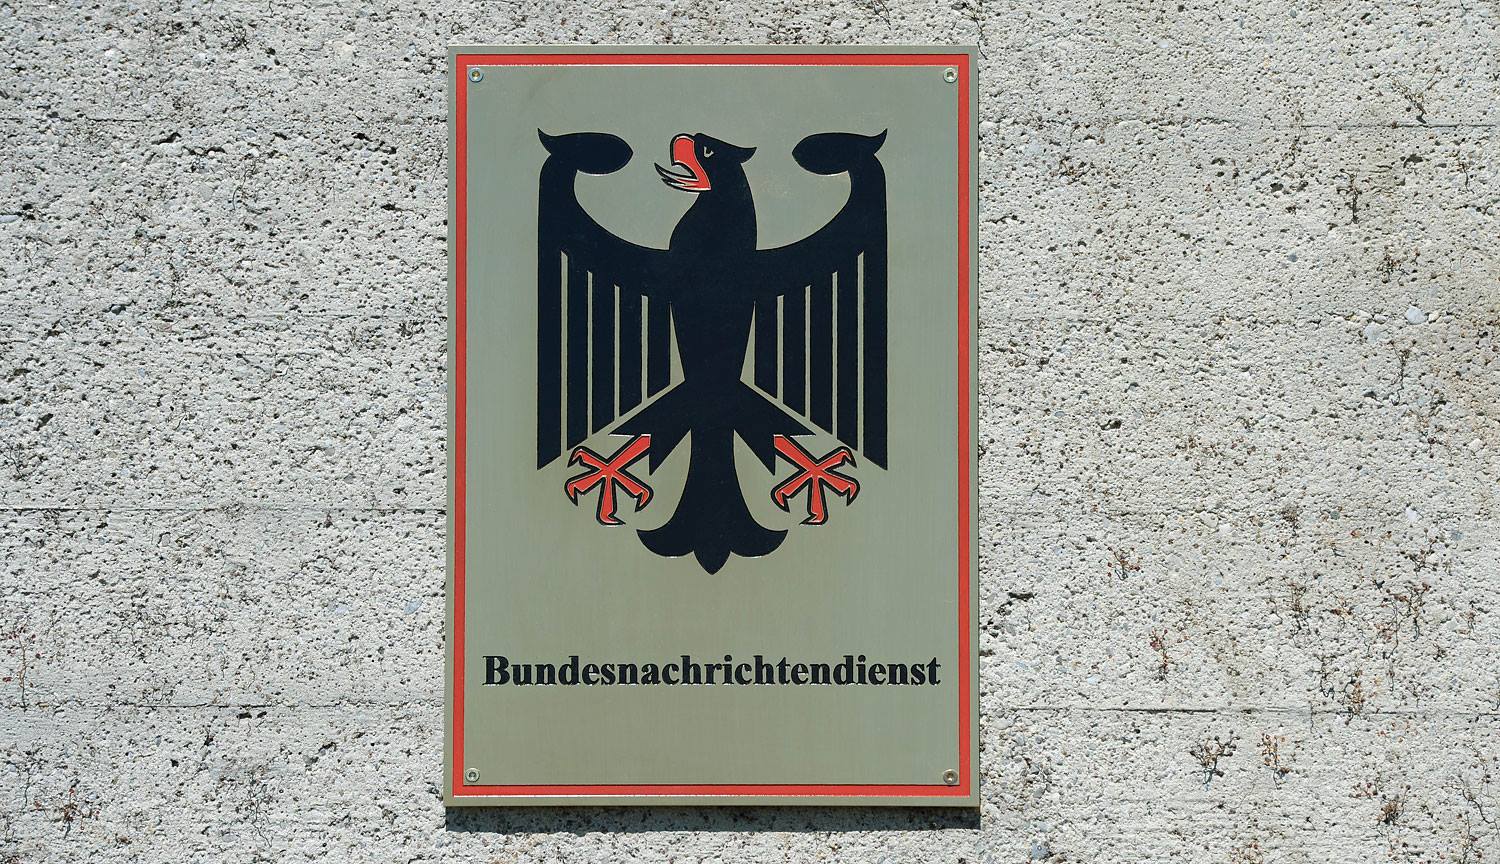 الاستخبارات الألمانية ـ ما العلاقة بين المركز الإسلامي بهامبورغ وإيران؟